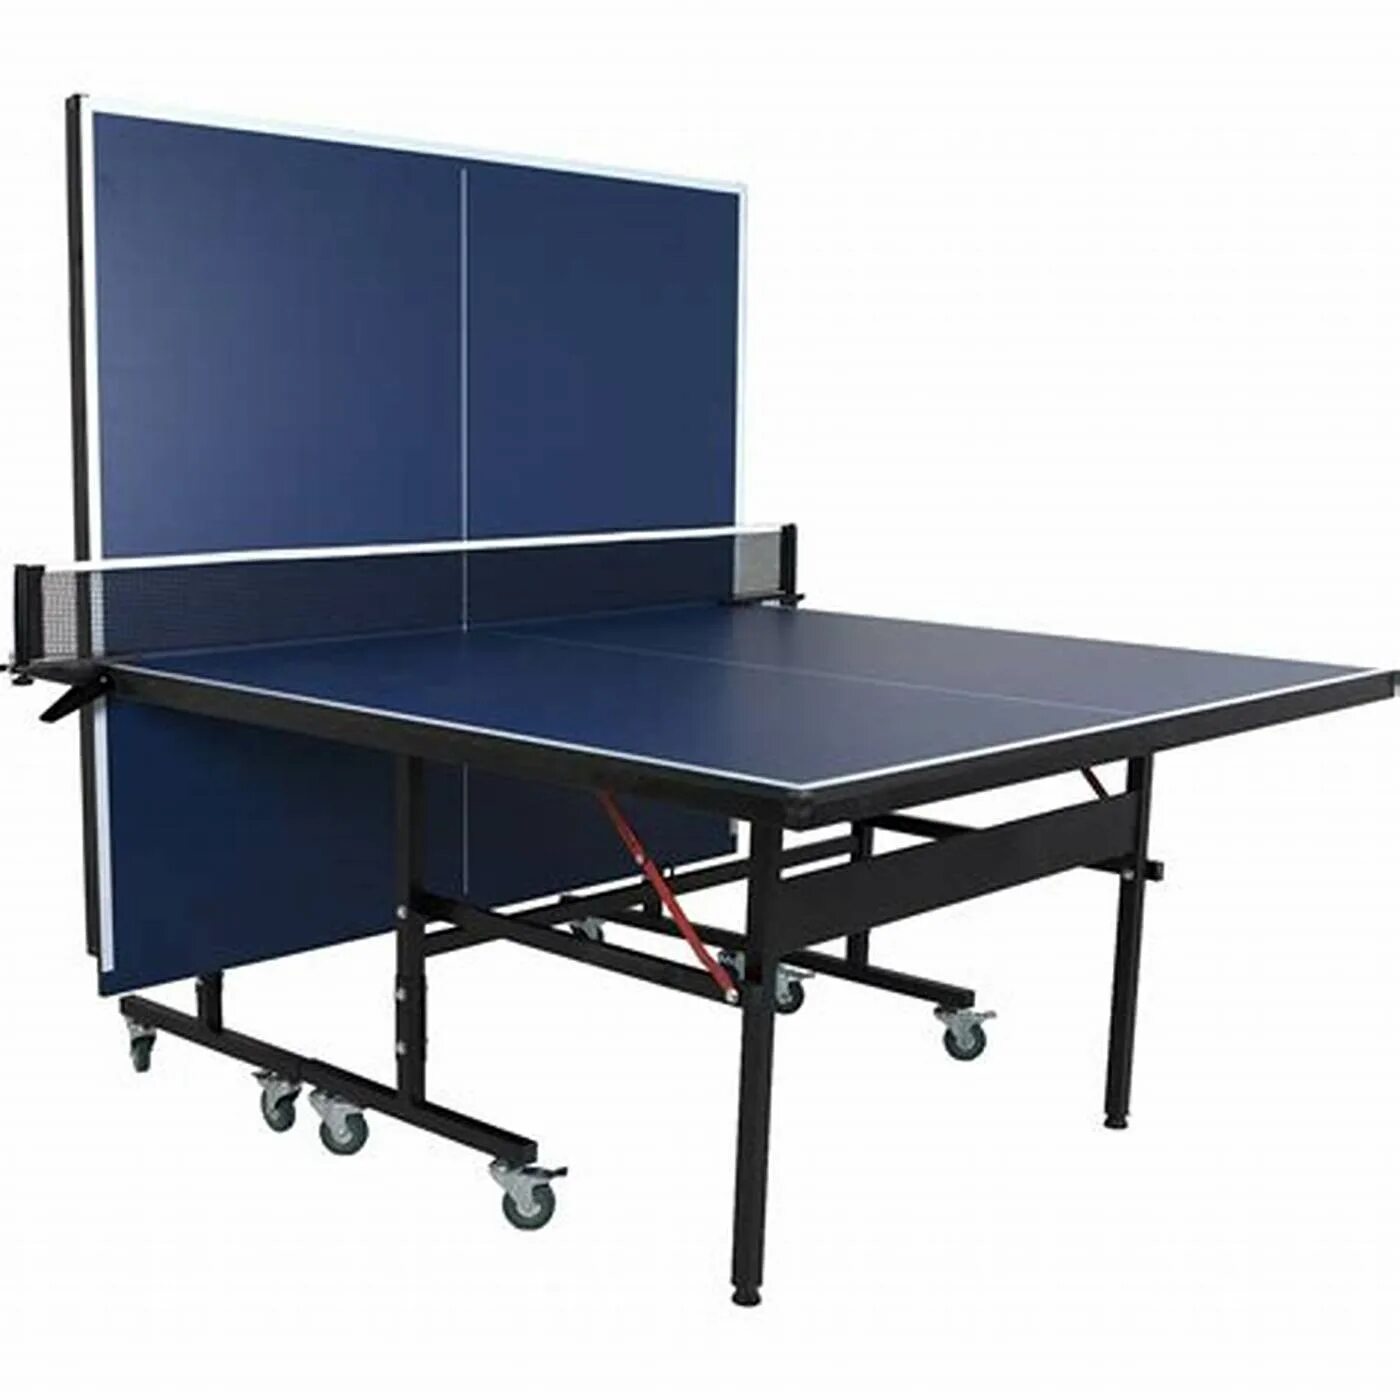 Теннисный стол Joola. Torneo стол для пинг-понга. Теннисный стол Neottec. Стол теннисный складной Light 61010.